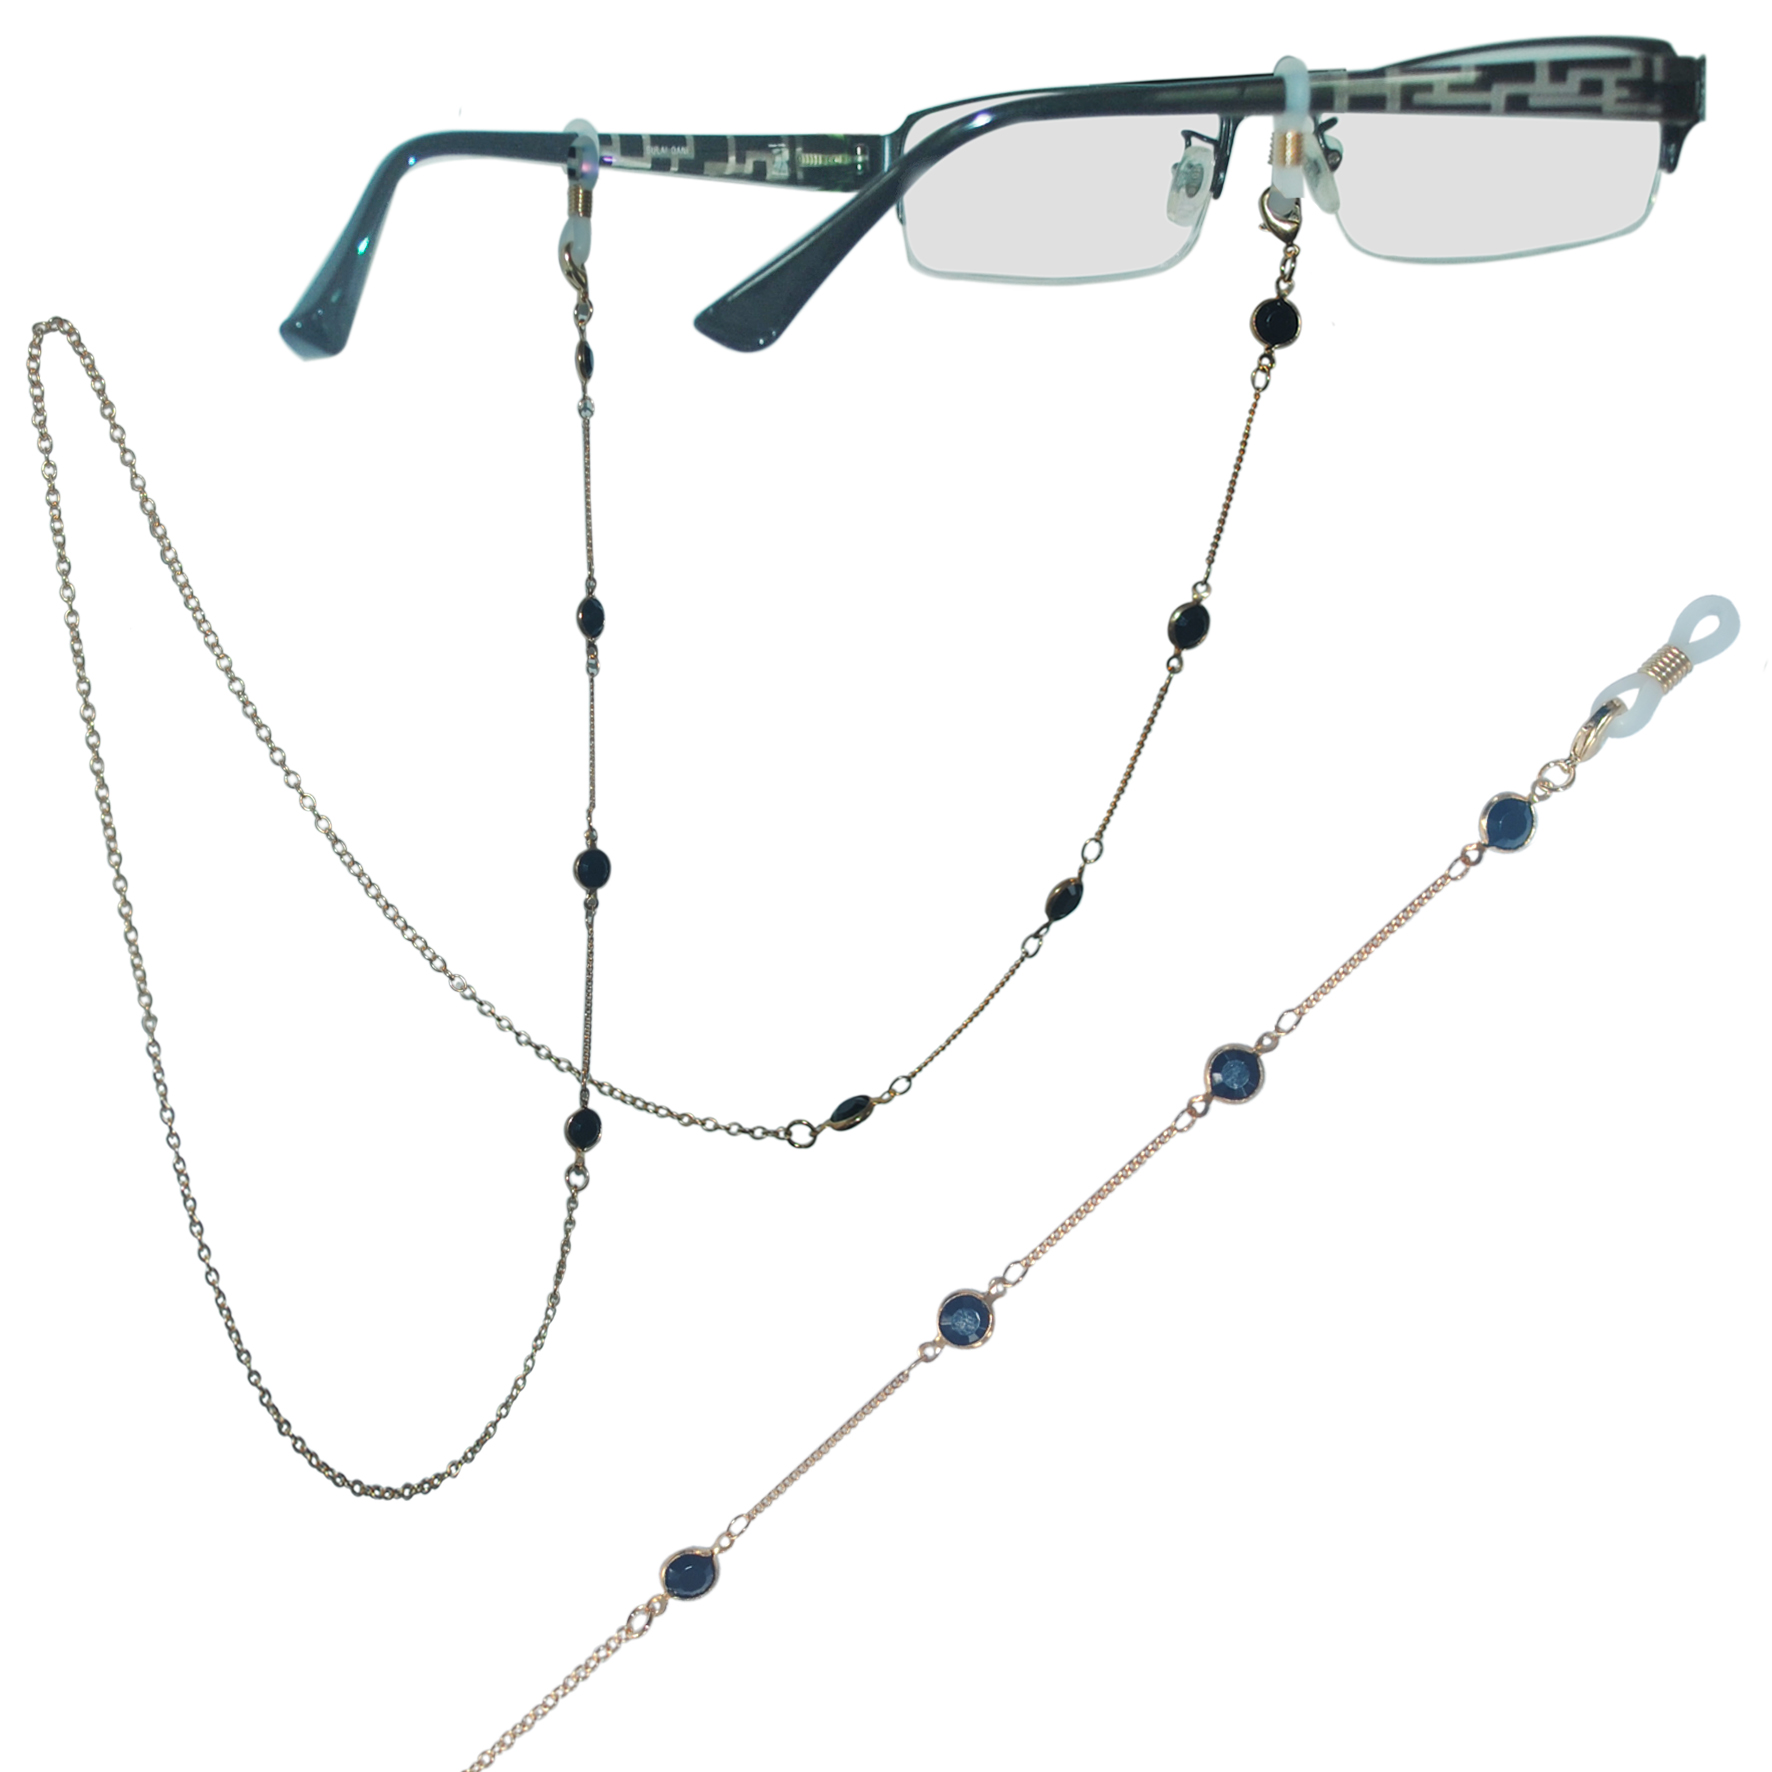 Elegante Damen-Brillenkette aus Messing, verziert mit flachen, facettierten Acrylperlen